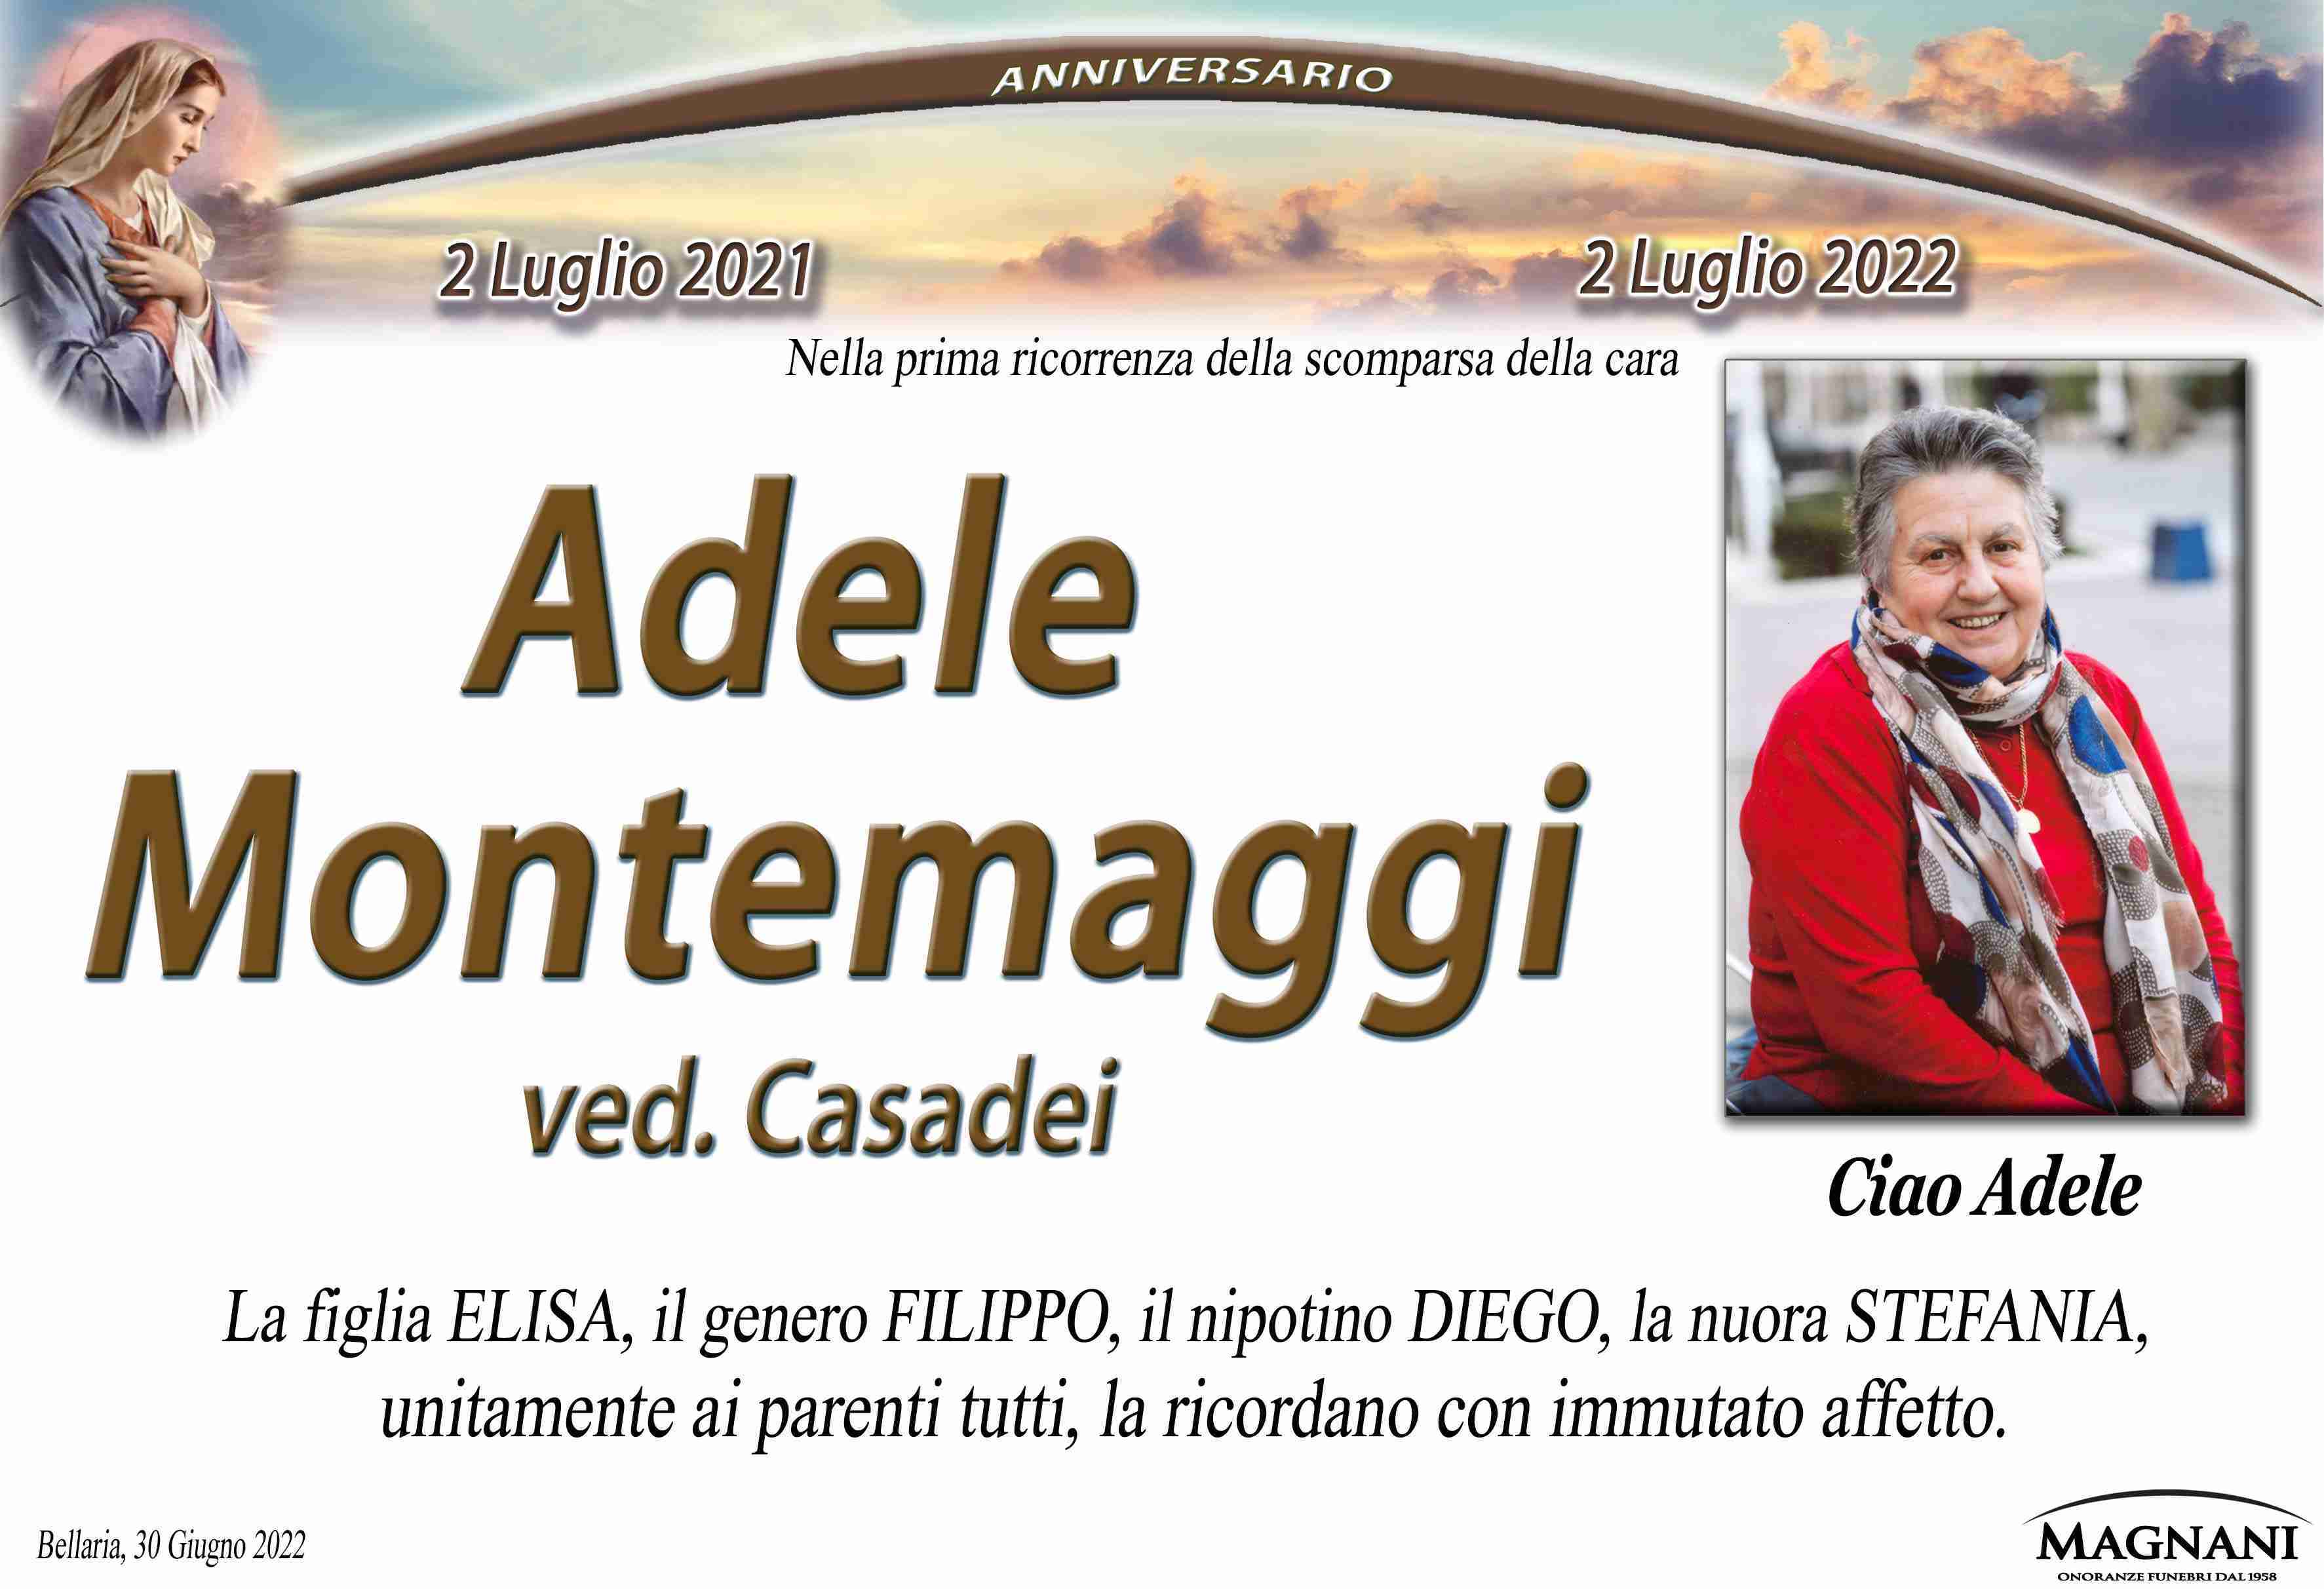 Adele Montemaggi